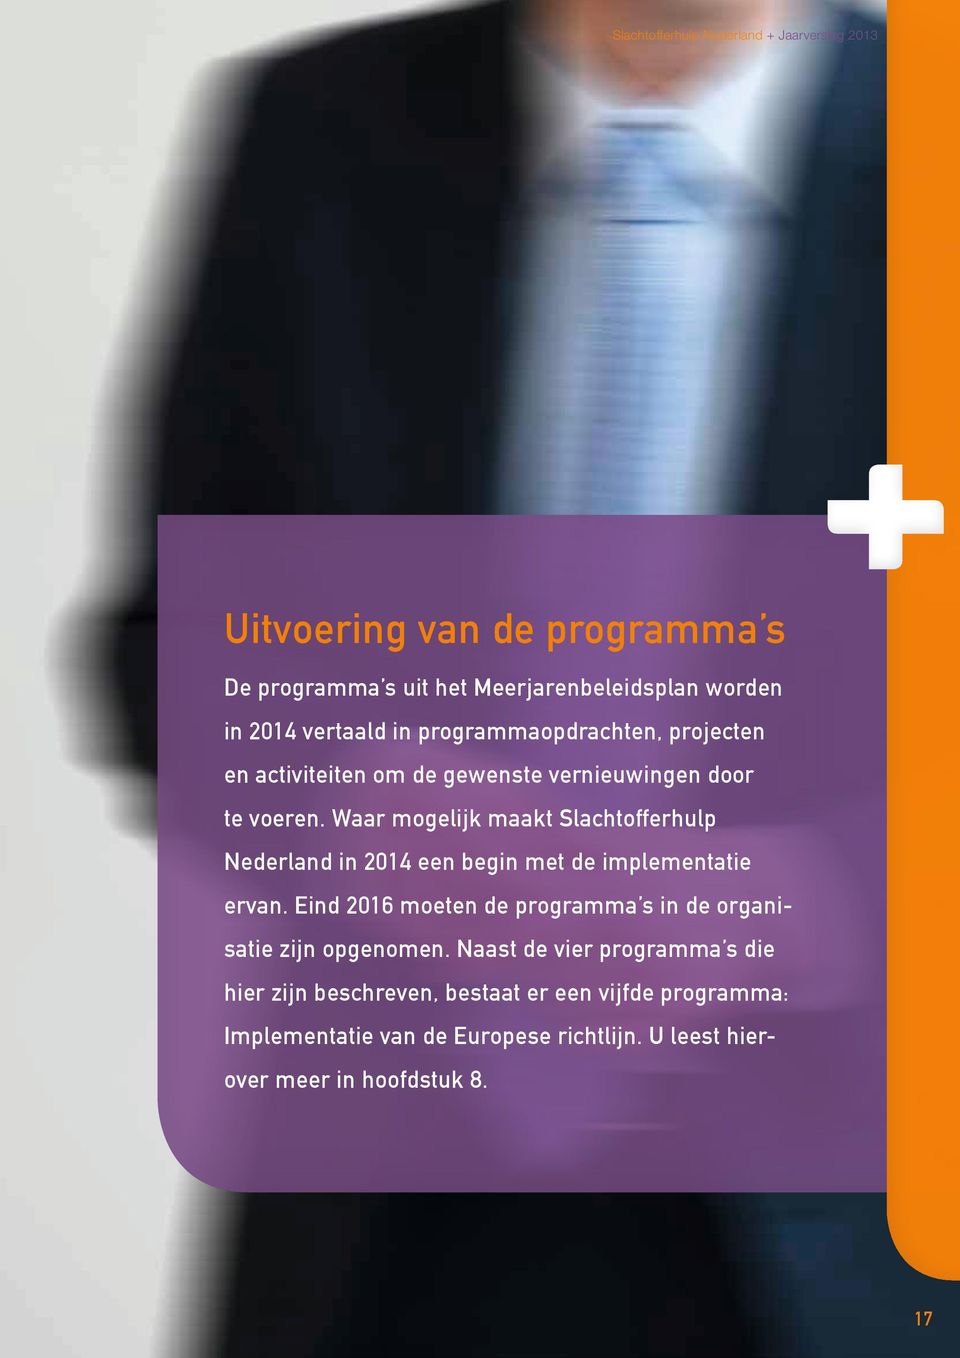 Waar mogelijk maakt Slachtofferhulp Nederland in 2014 een begin met de implementatie ervan.